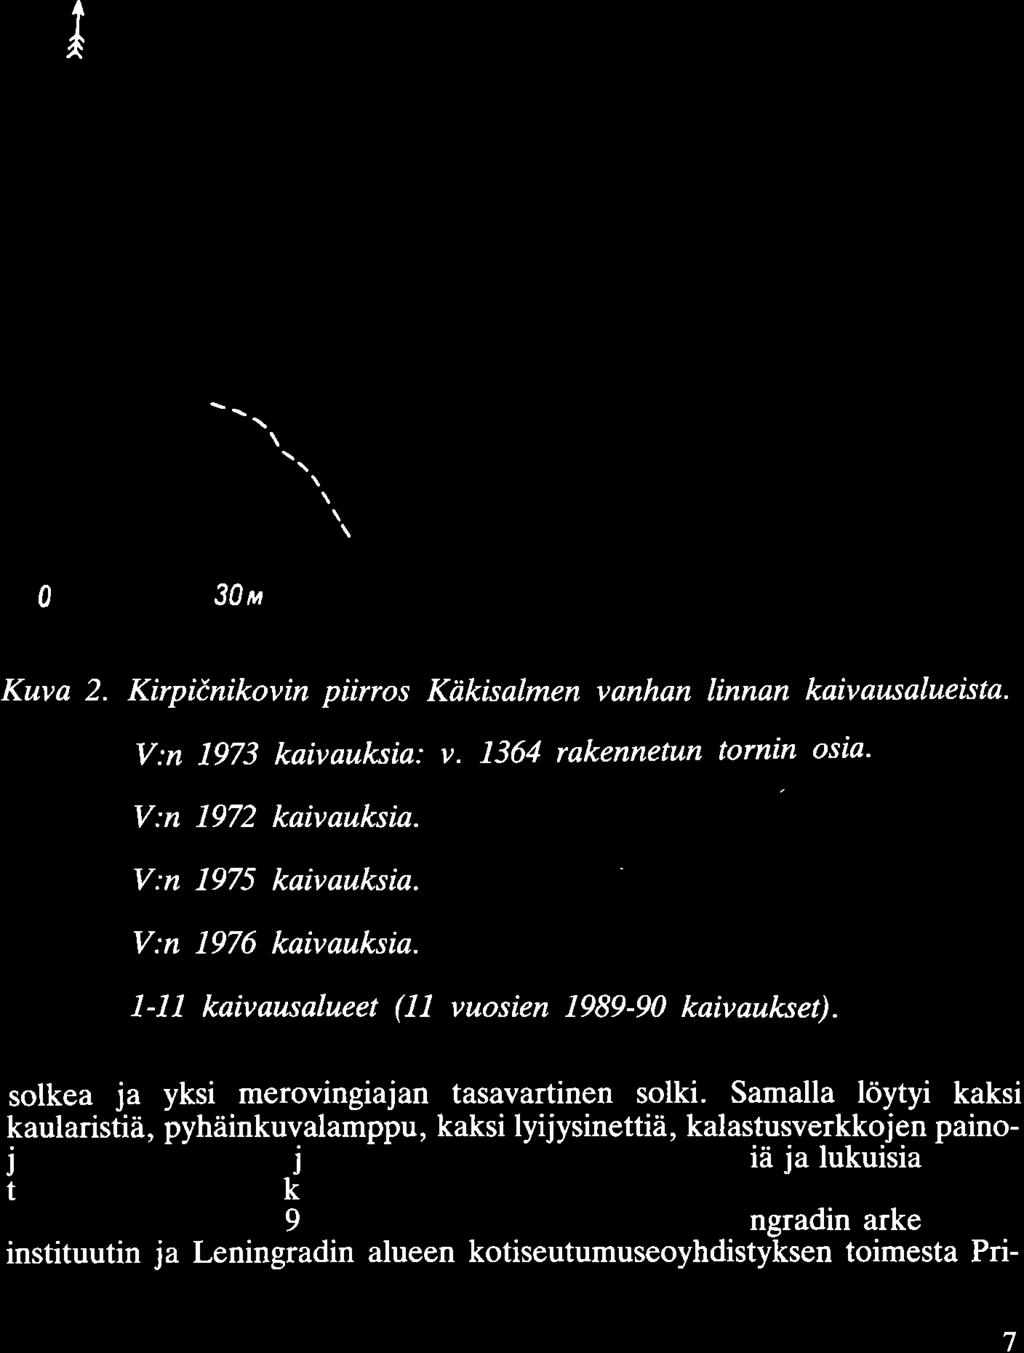 0 Kuva 2. Kirpicnikovin piirros Käkisalmen vanhan linnan kaivausalueista. [5TI - V:n 1973 kaivauksia: v. 1364 rakennetun tornin osia. V:n 1972 kaivauksia. V:n 1975 kaivauksia. V:n 1976 kaivauksia.